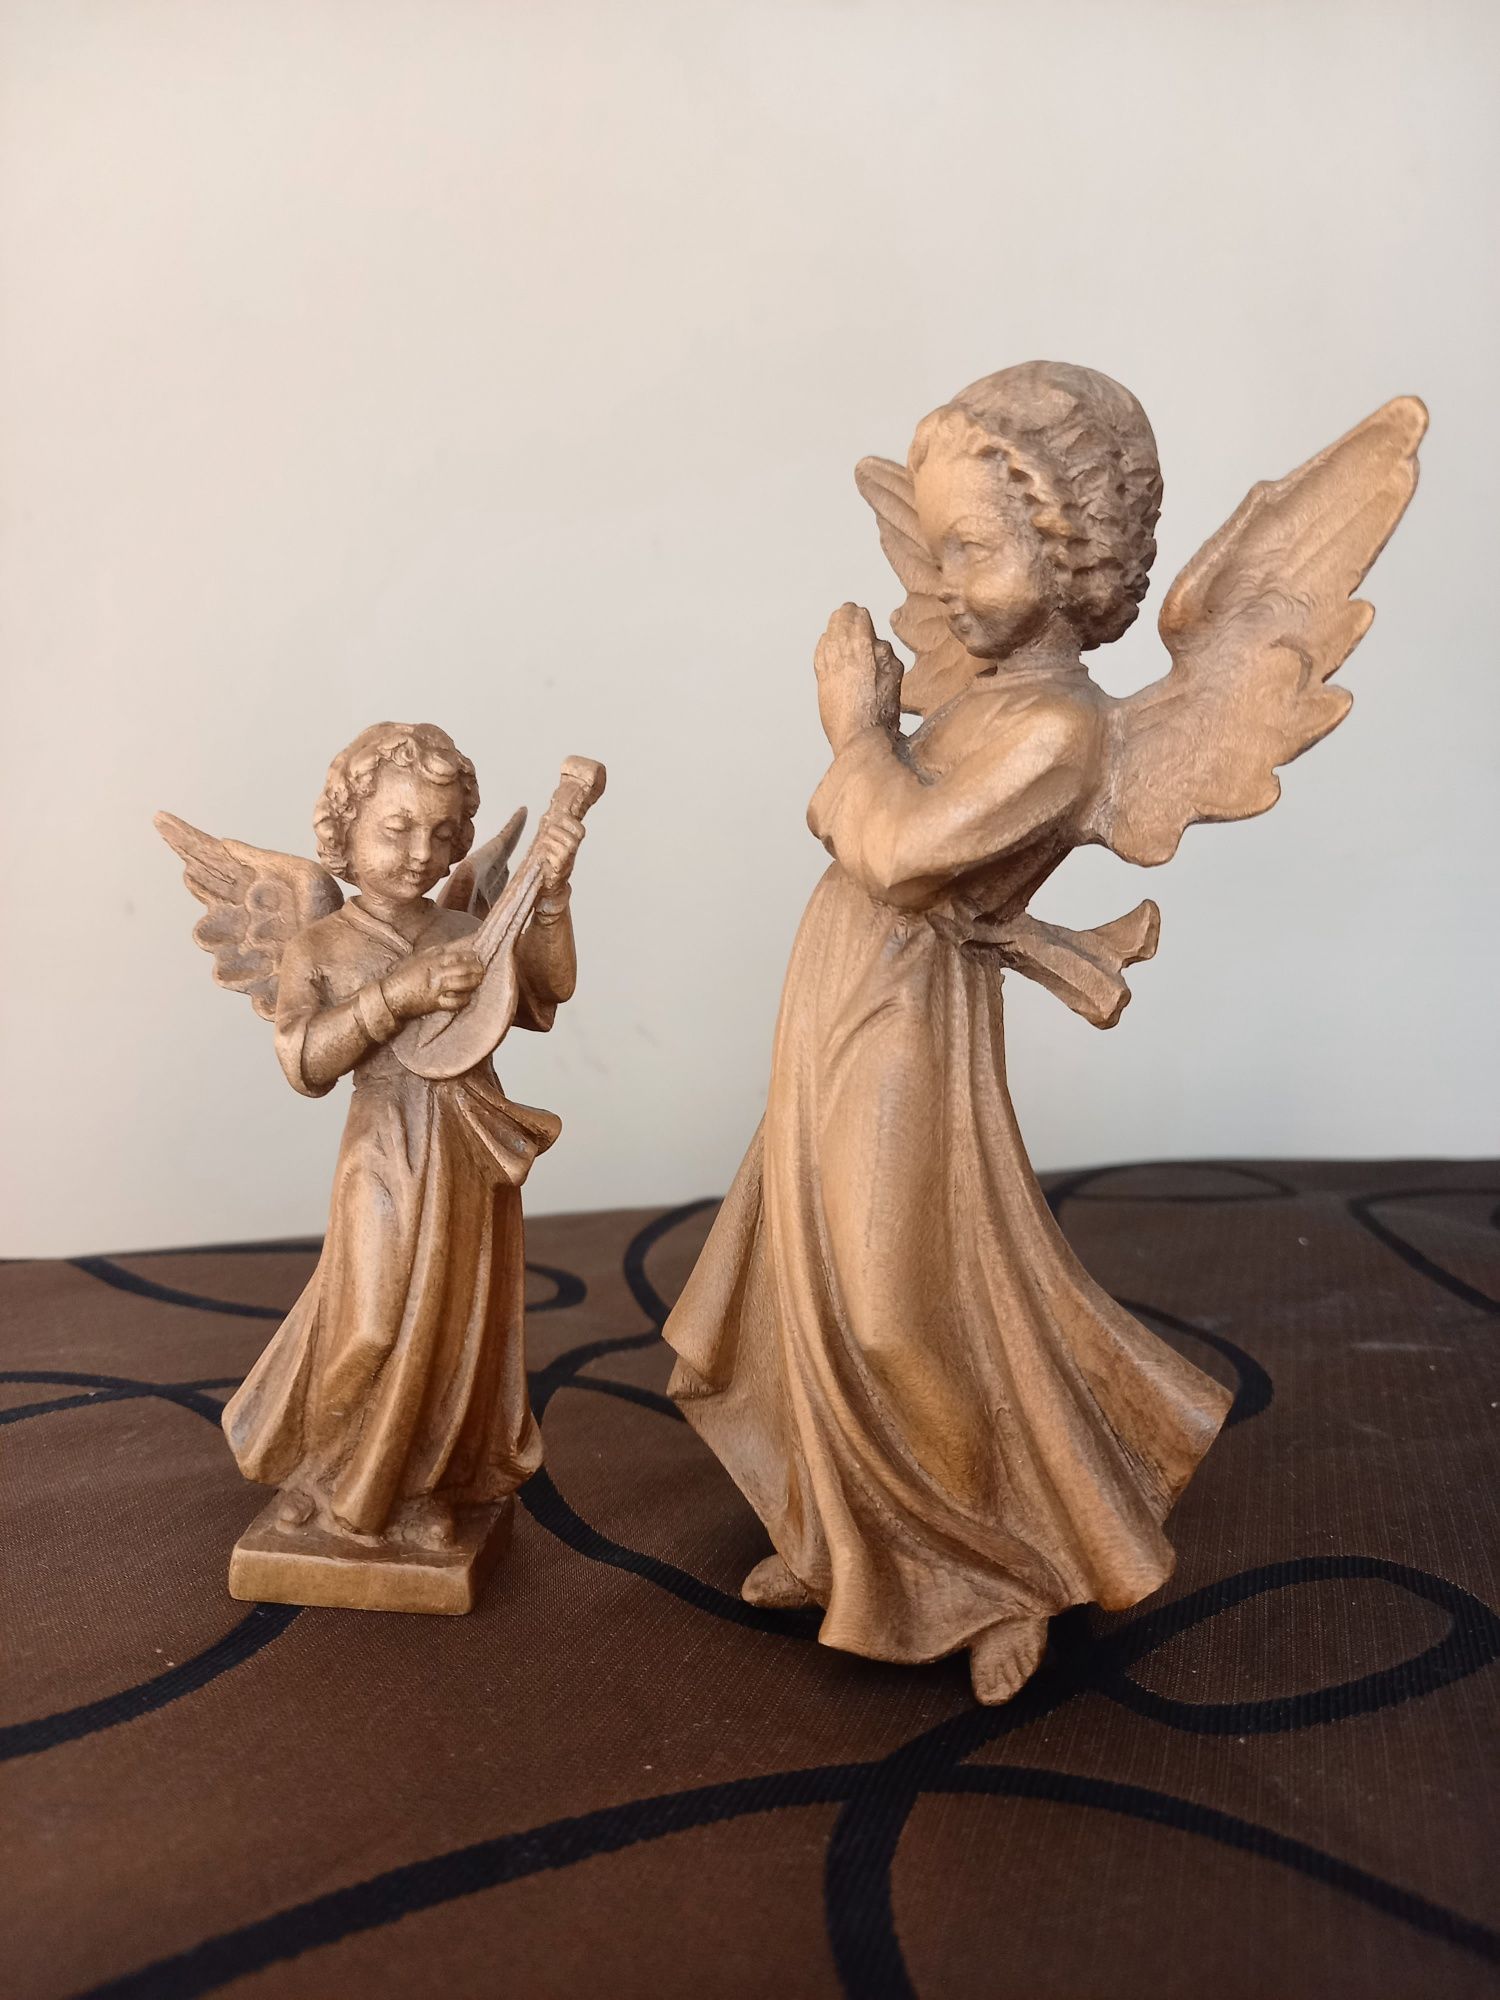 Aniołki, dwie figurki drewniane, piękne rzeźby.